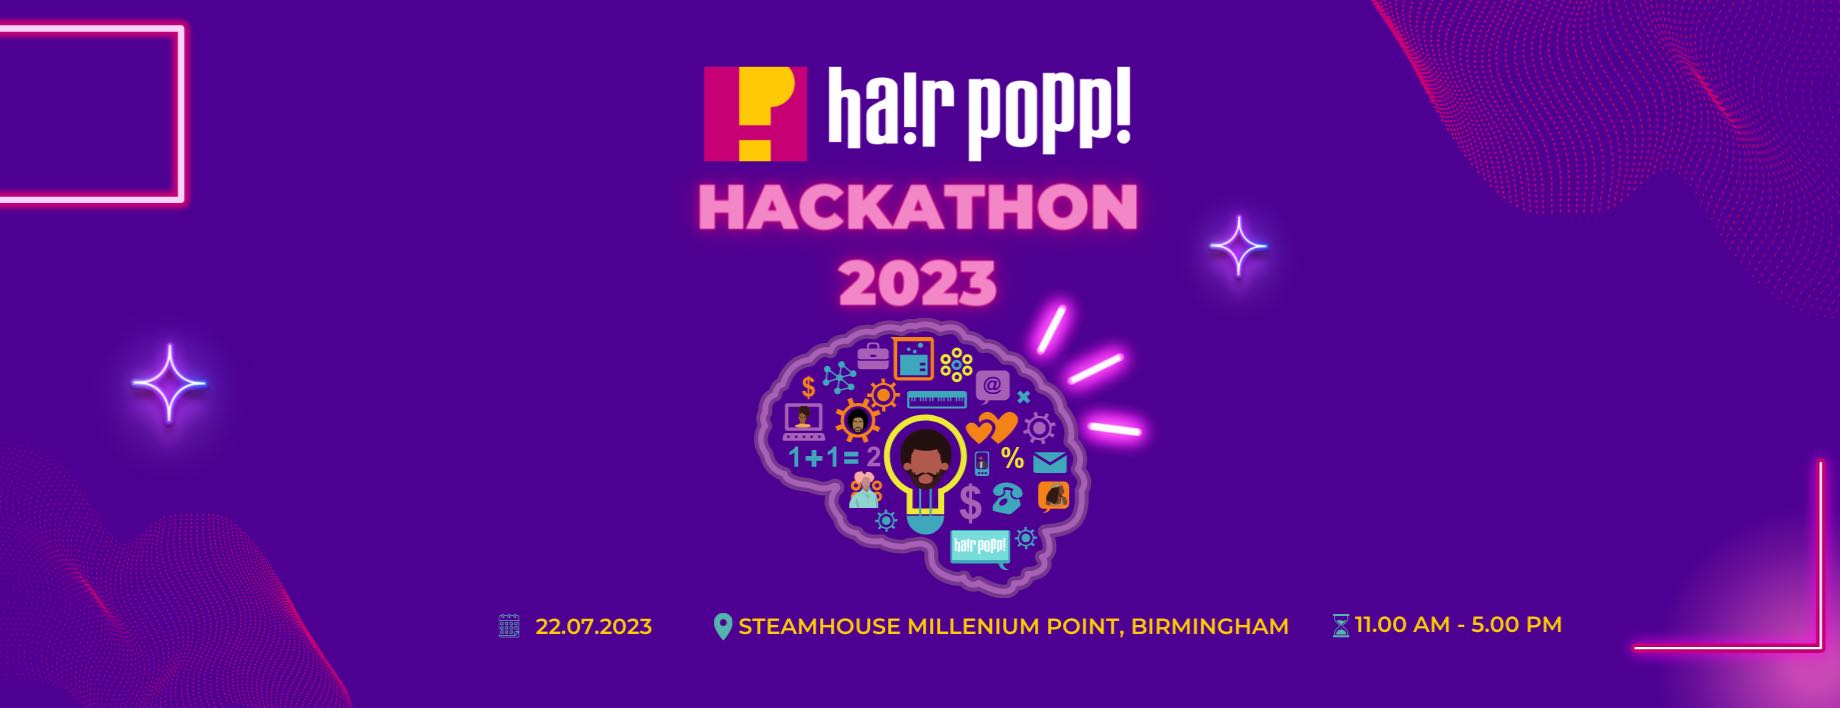 Hair Popp Hackathon 2023